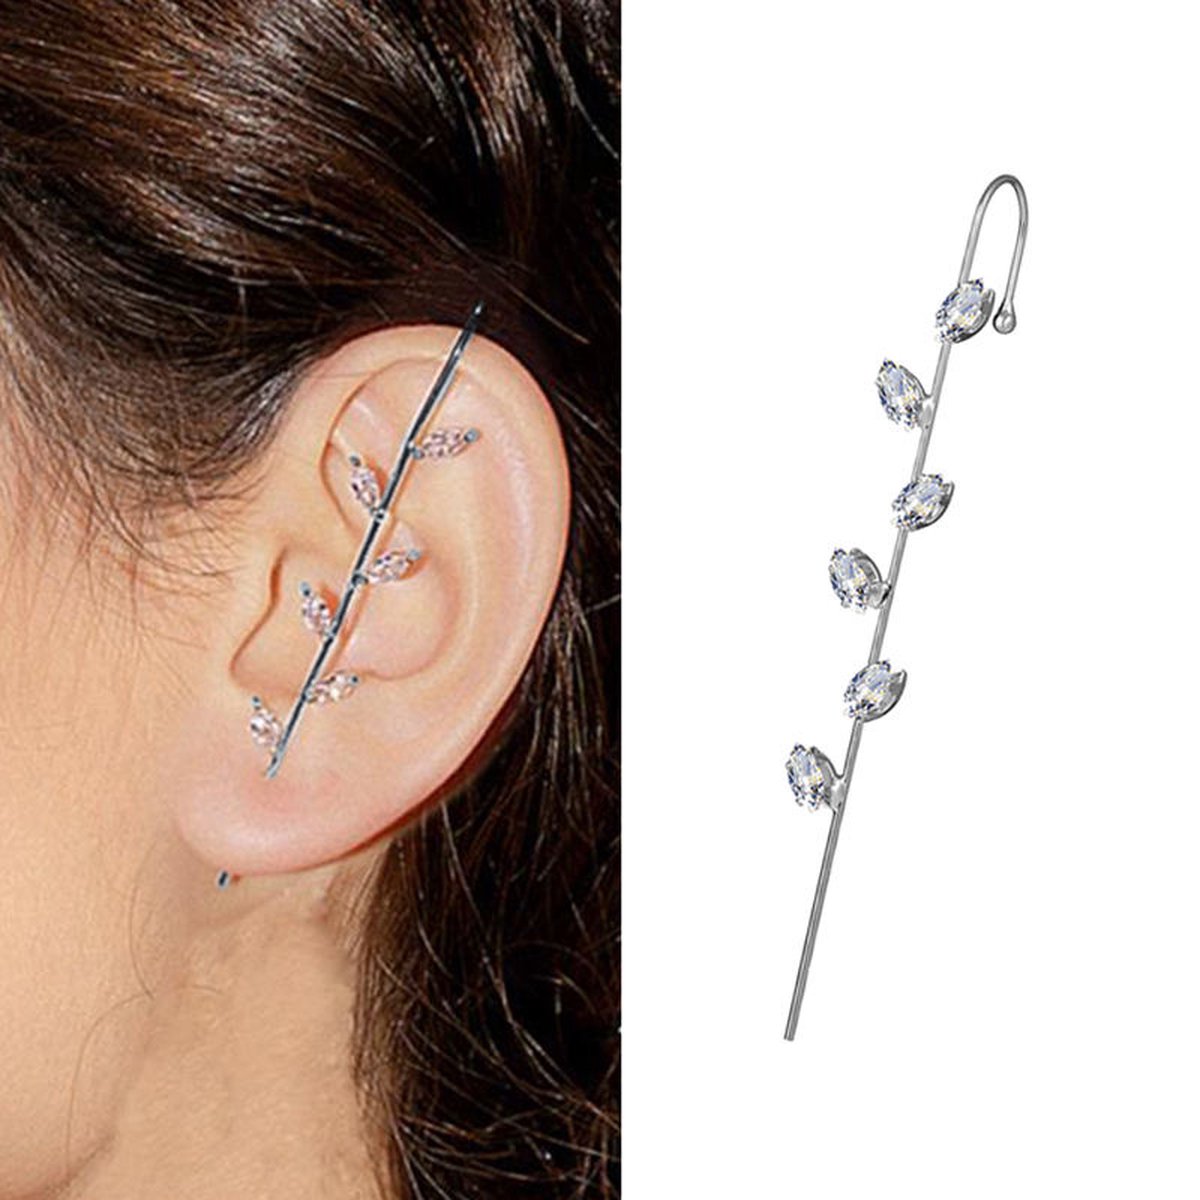 Dear Lune - Earring Piercing - 1 piece - Oorbel - Hook Earrings - Zirconia - Simple - Elegant - Style 008